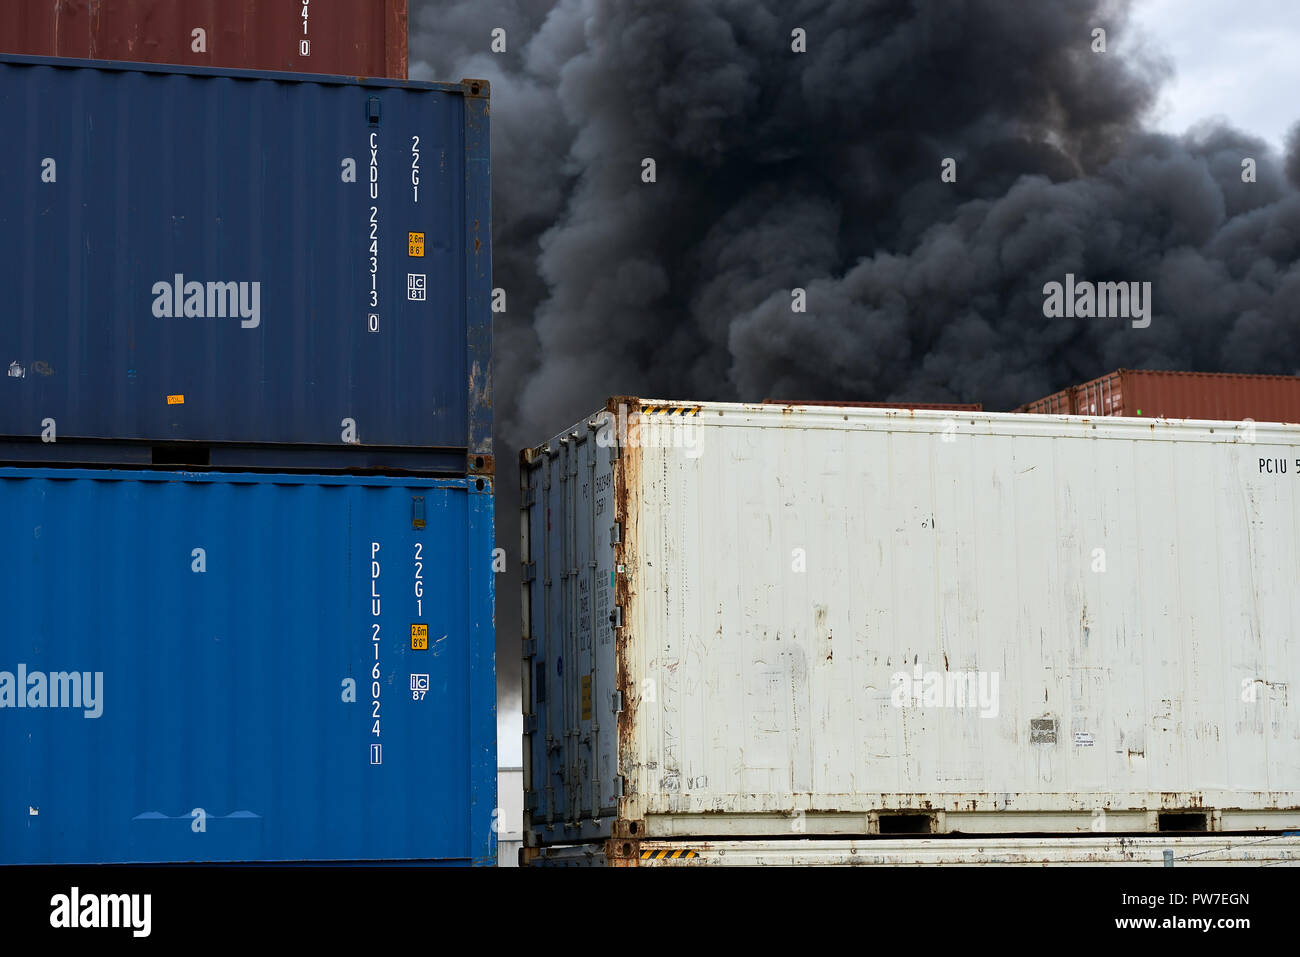 Vista astratta di contenitori di spedizione con pennacchi di fumo tossico da un incendio industriale sollevarsi verso il cielo. Foto Stock